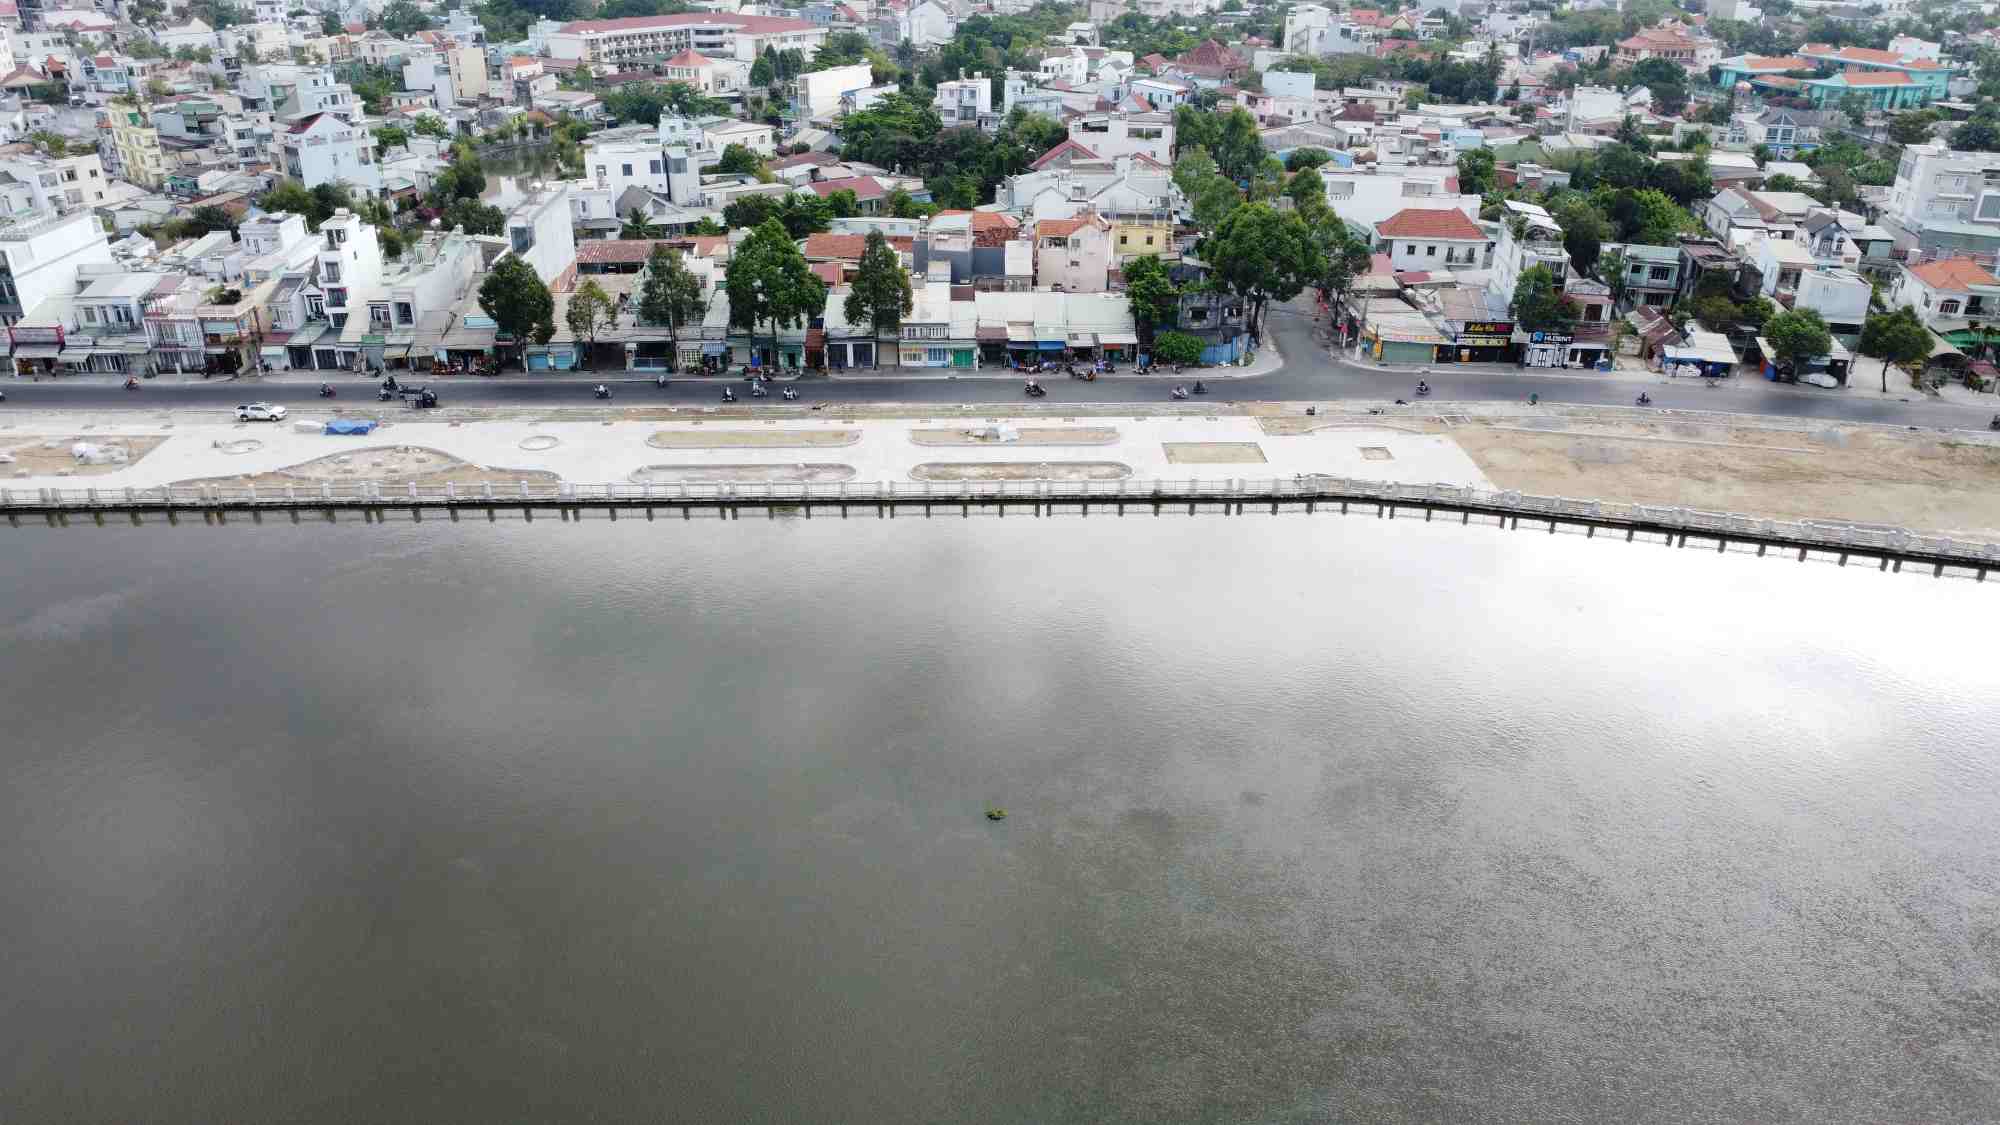 UBND thành phố Thủ Dầu Một cho biết, đang tiếp tục đầu xây dựng chỉ trang bờ sông Sài Gòn nối tiếp từ đường Bạch Đằng với đường Nguyễn Tri Phương.